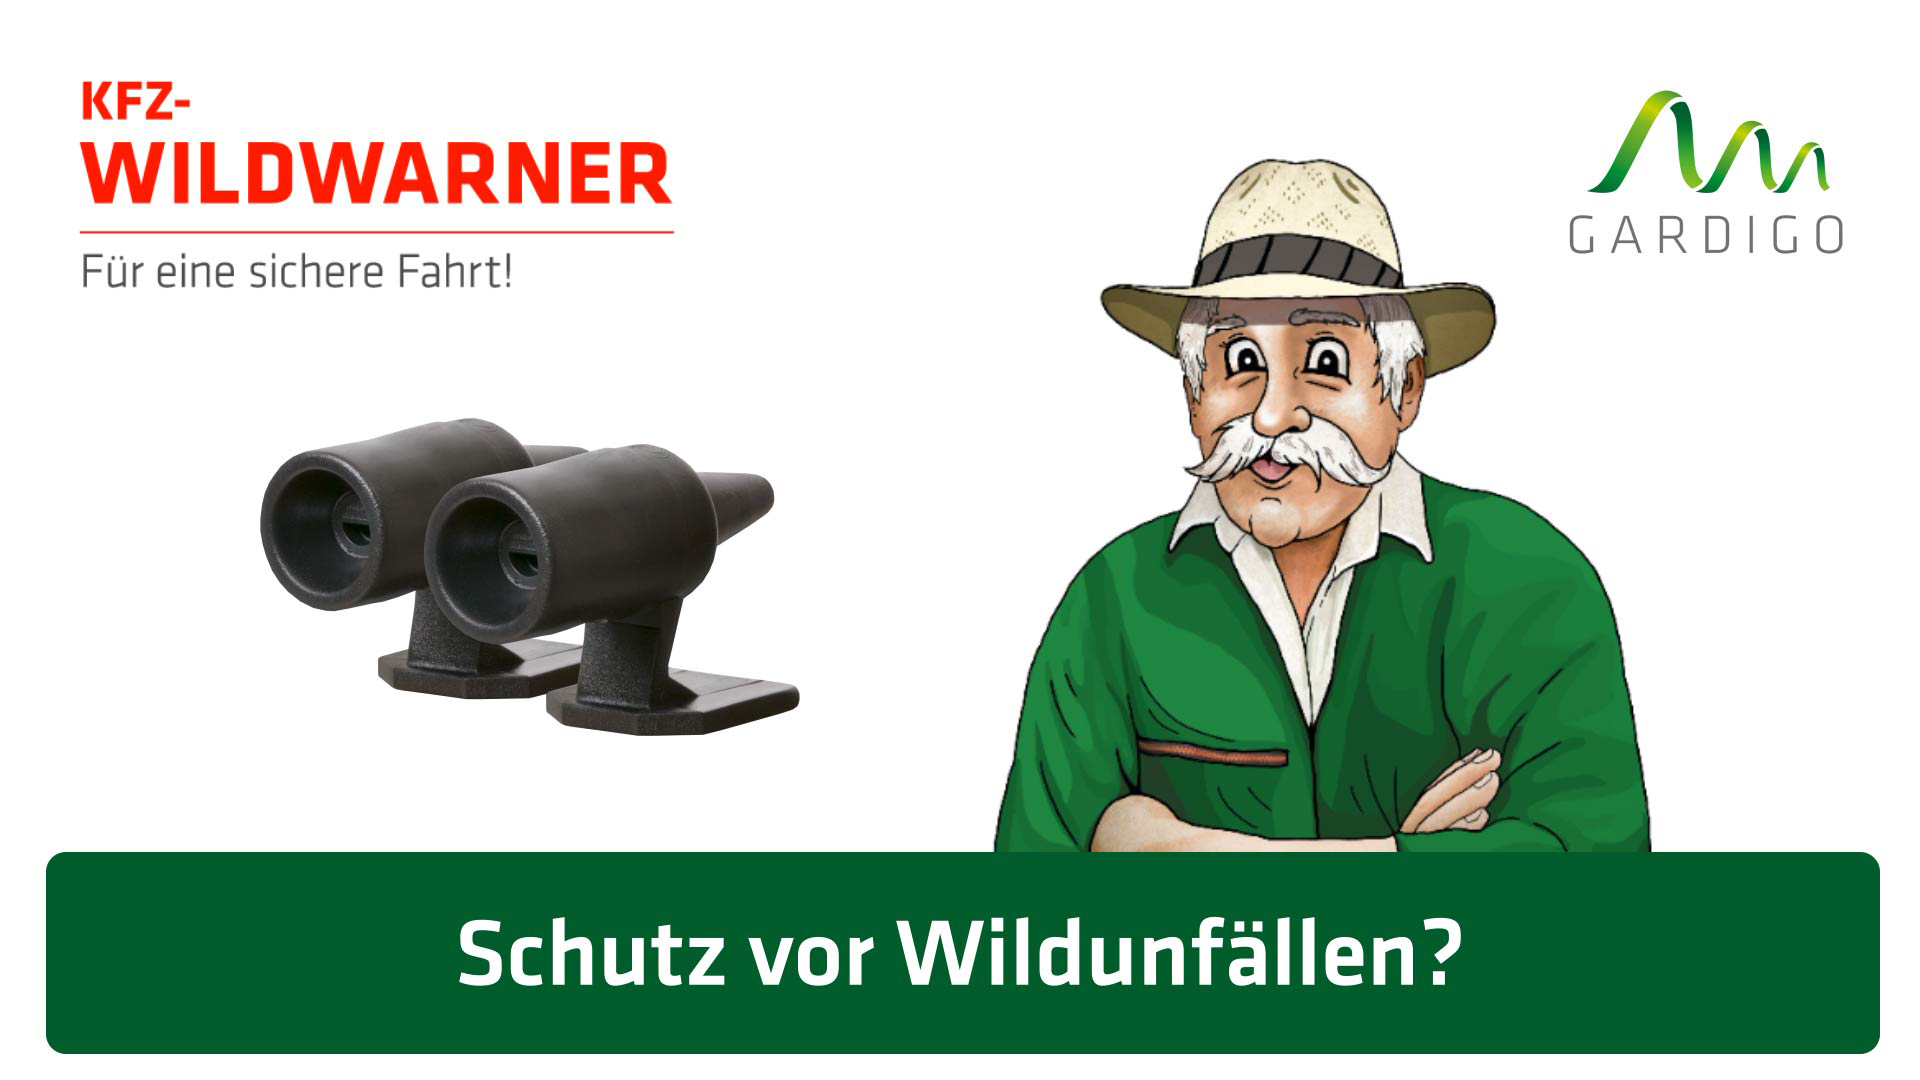 2* - Hirsch Pfeifen Wildtiere Warn Geräte Tier Alarm Auto